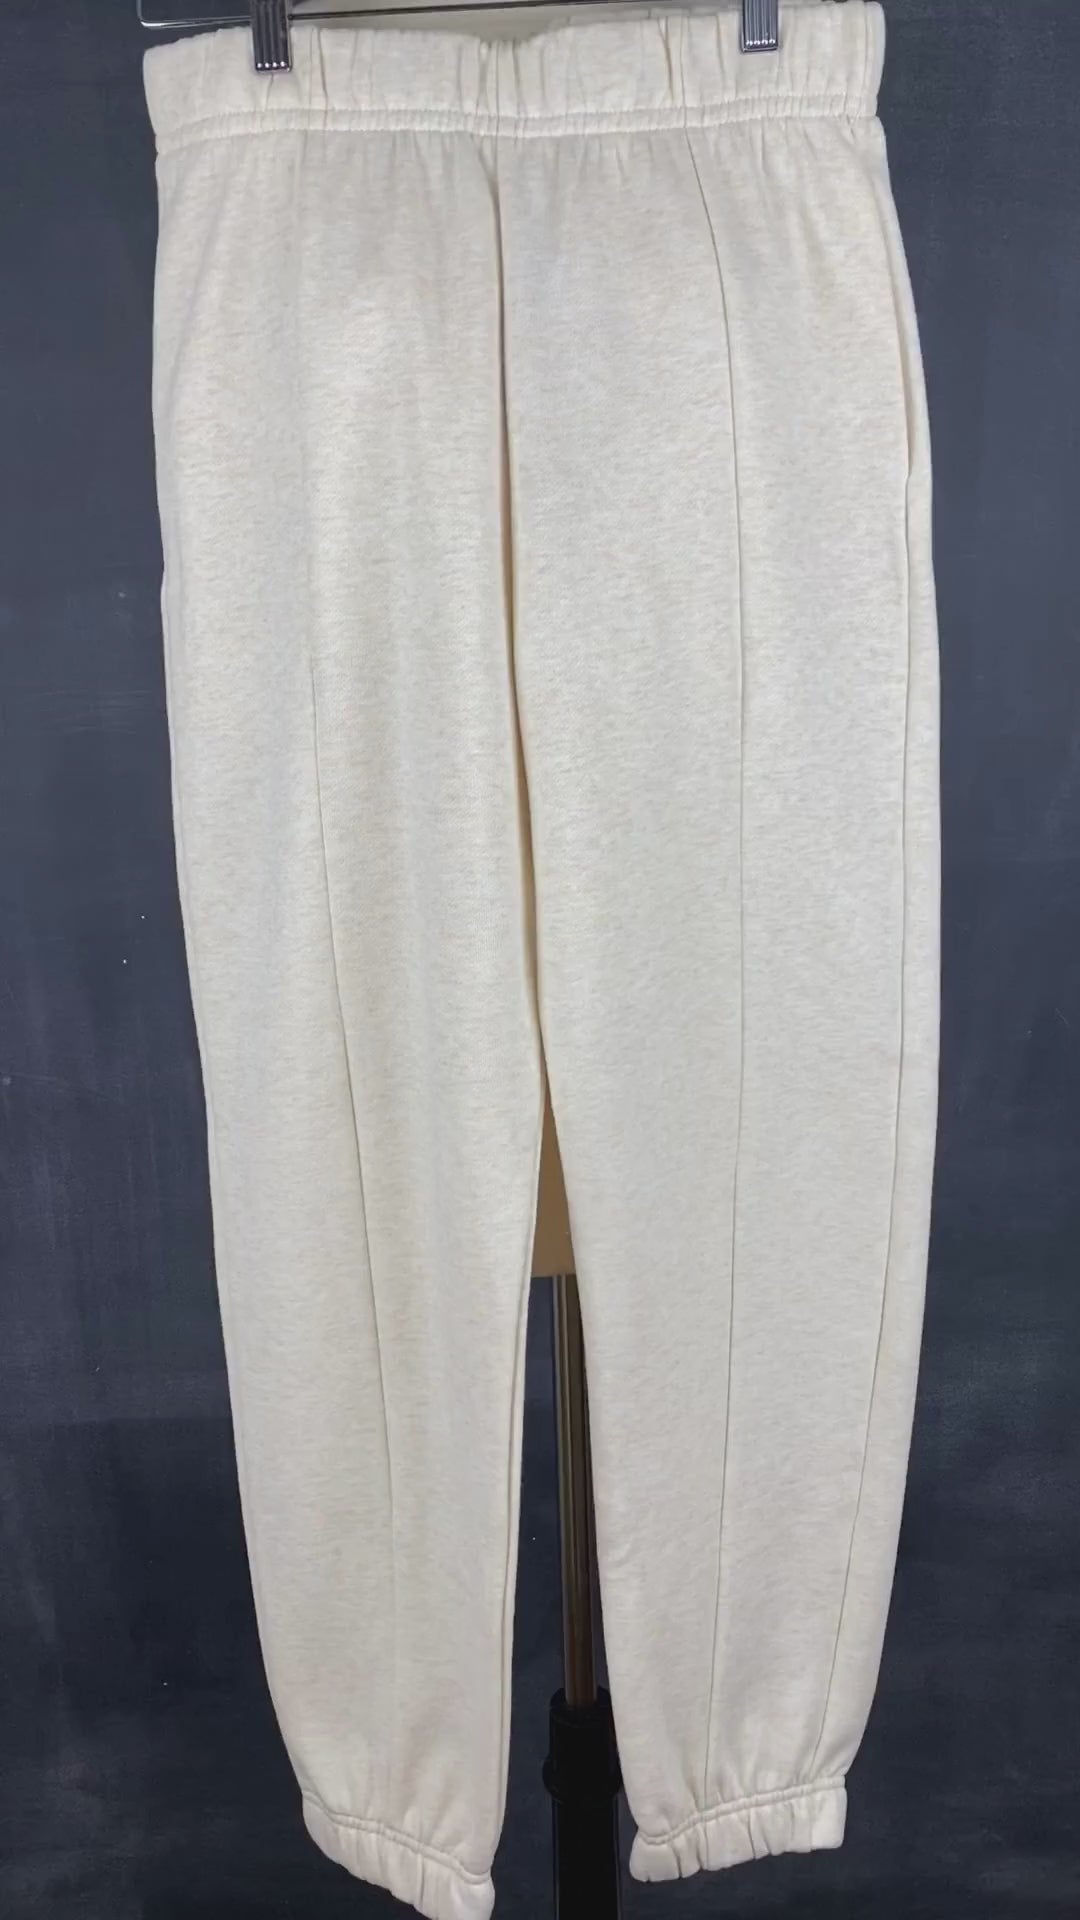 Pantalon jogger ouaté confort suprême Seve & Co. disponibles en plusieurs tailles. Vue de la vidéo qui présente tous les détails du pantalon couleur avoine lumineuse.